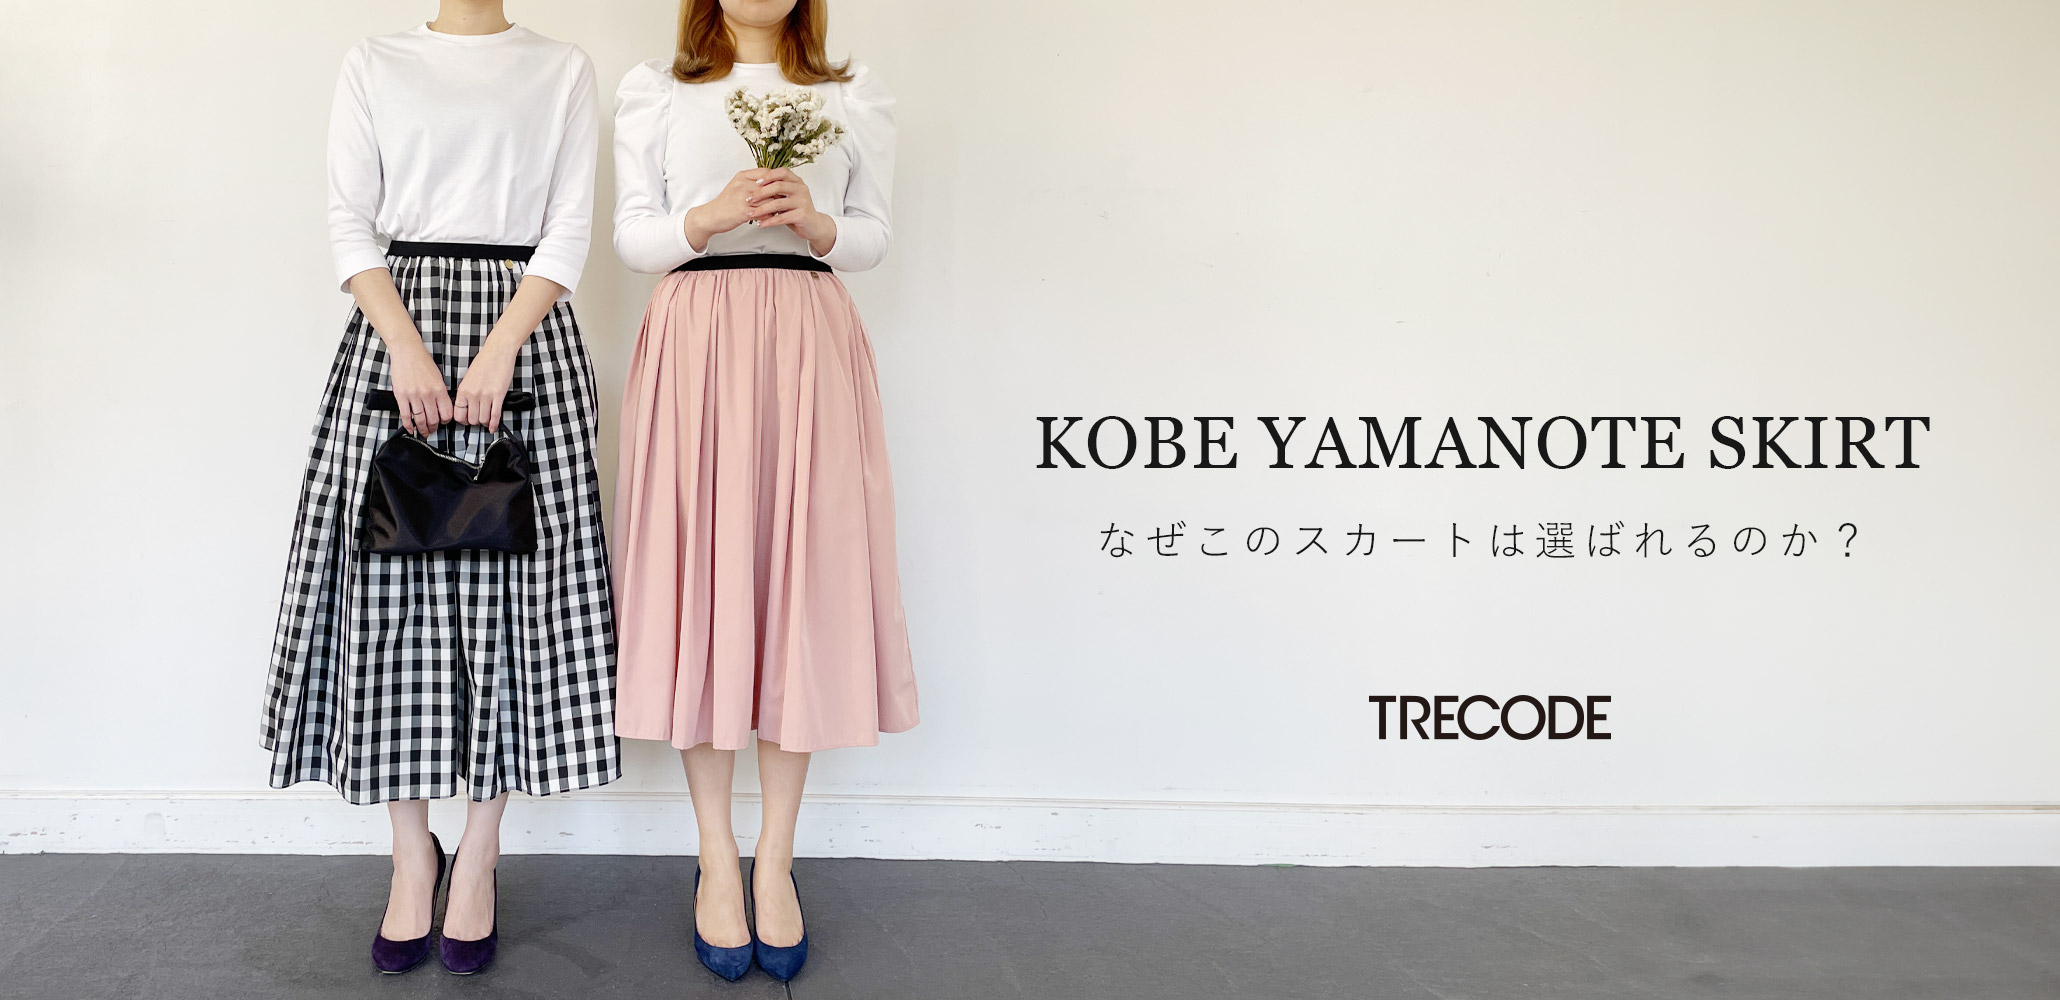 TRECODEでのリピート率No.1神戸・山の手スカートが選ばれる理由とは